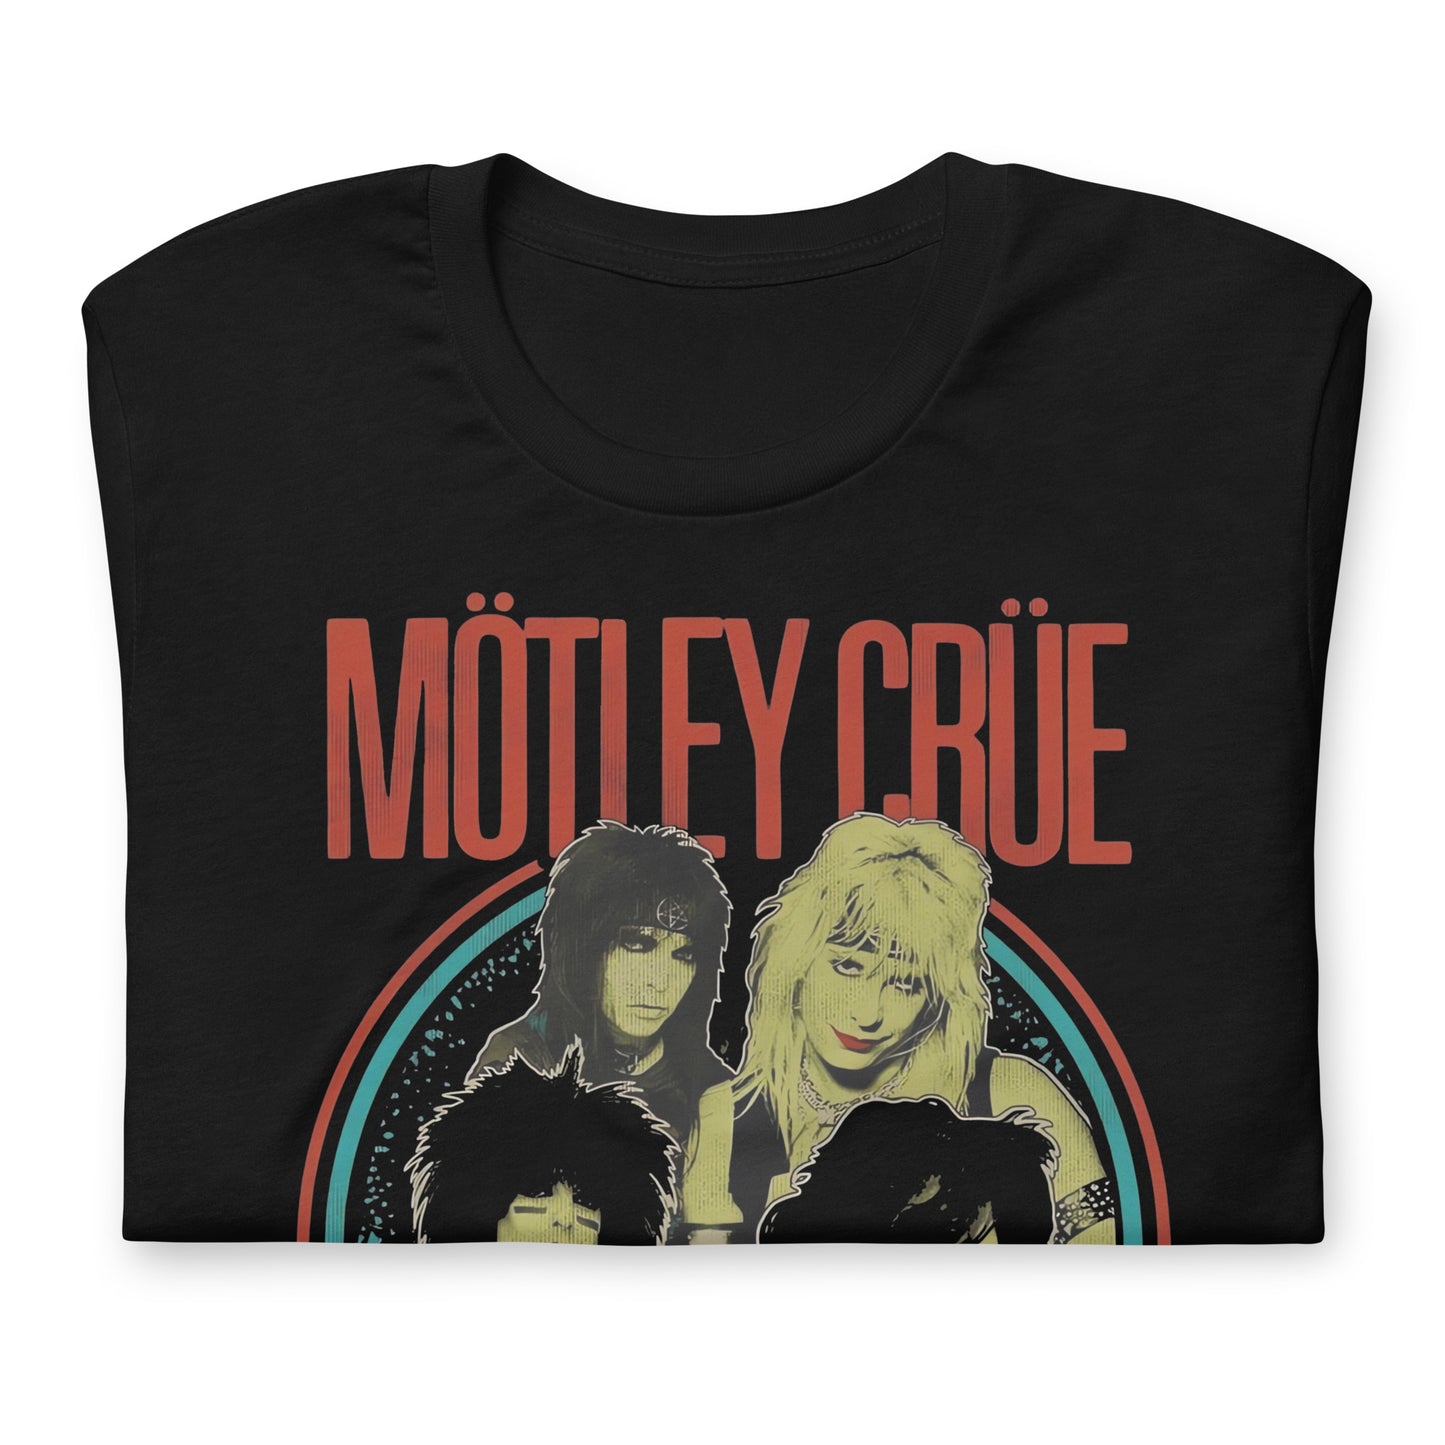 Camiseta Mötley Crüe Banda, Disponible en la mejor tienda online para comprar tu merch favorita, la mejor Calidad, compra Ahora en Superstar! 